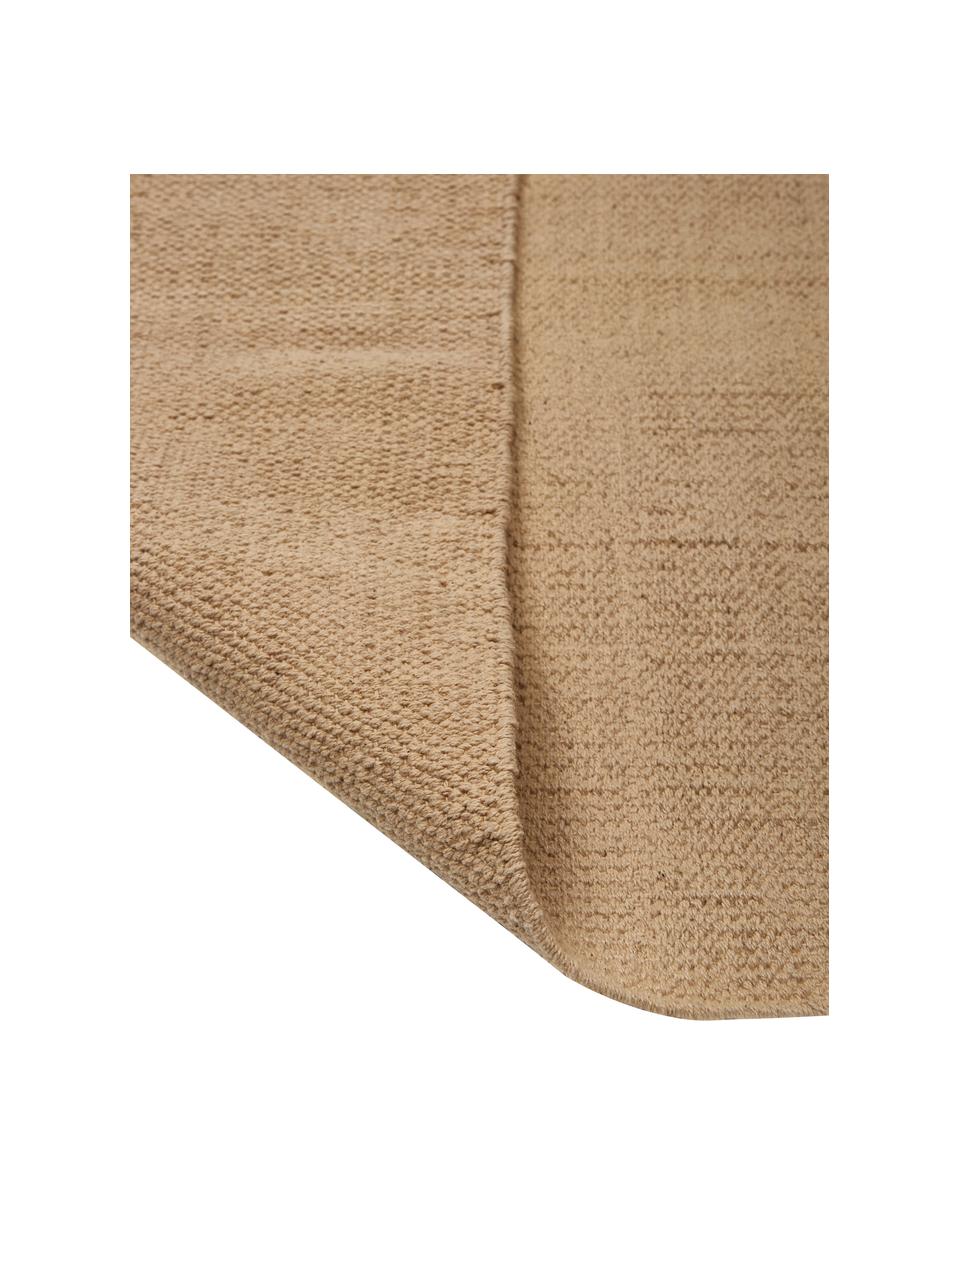 Tapis en coton fin tissé main beige Agneta, 100 % coton, Beige, larg. 200 x long. 300 cm (taille L)